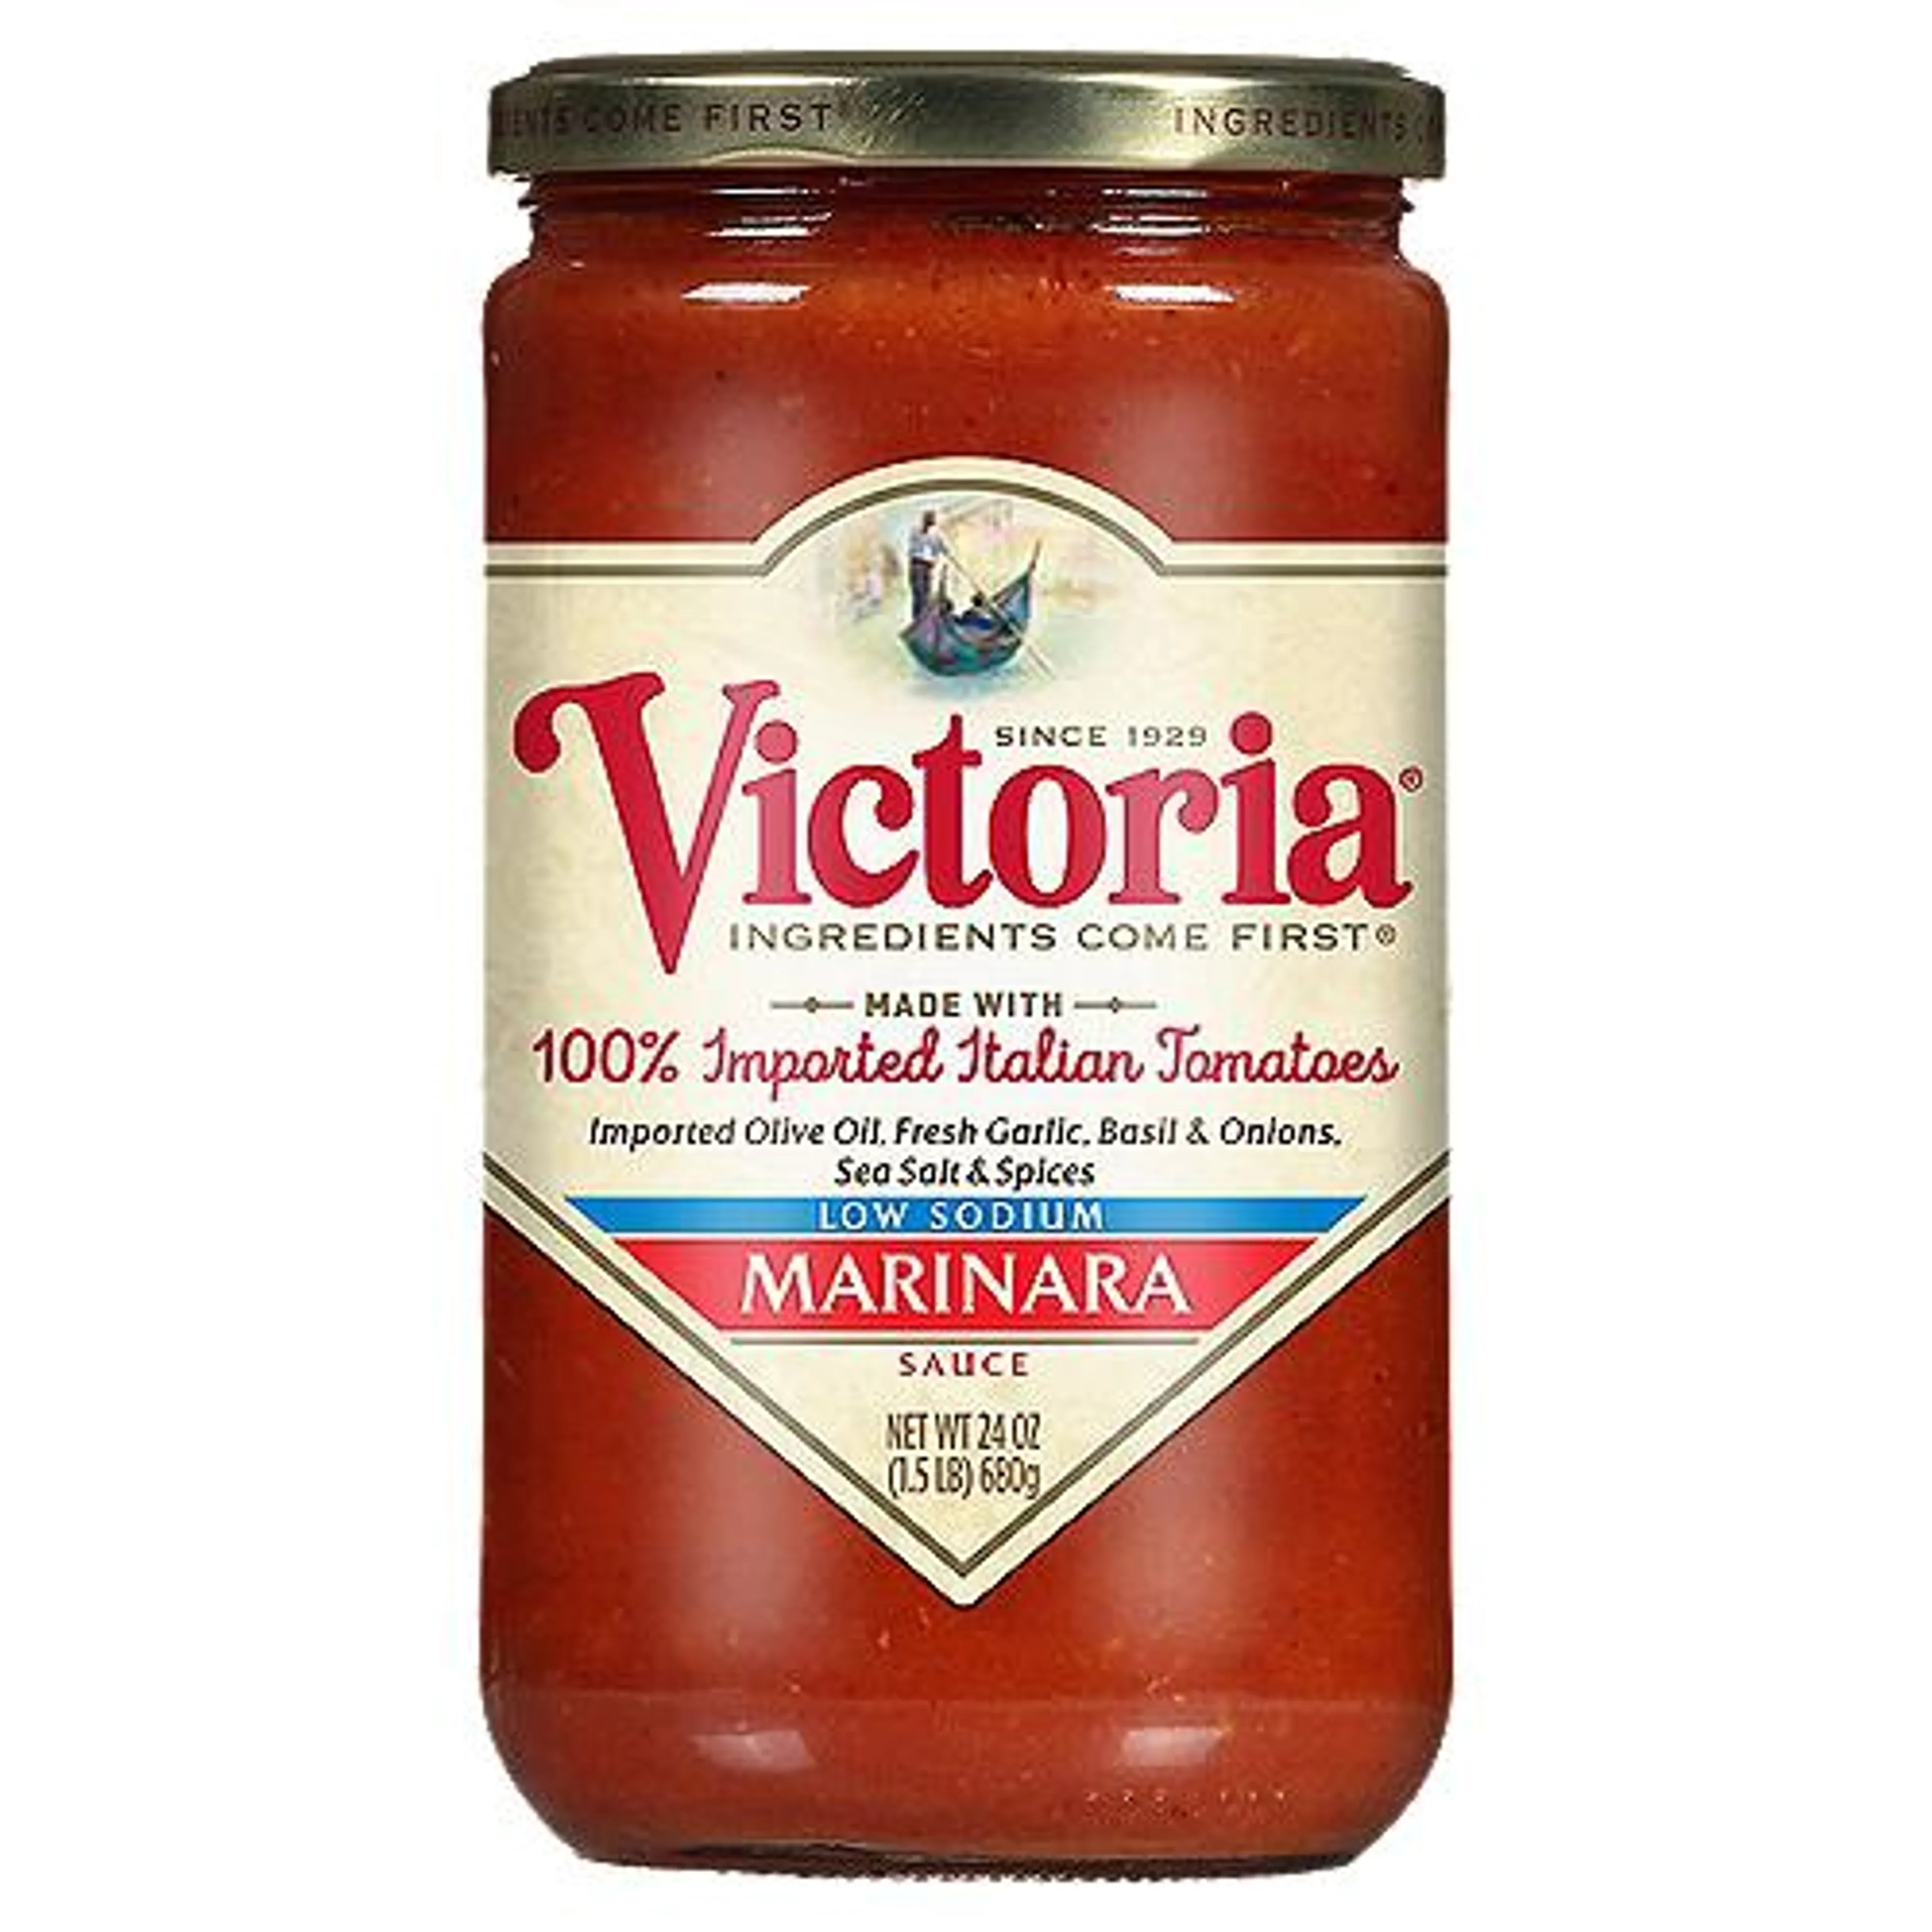 Victoria Low Sodium Marinara Sauce, 24 oz